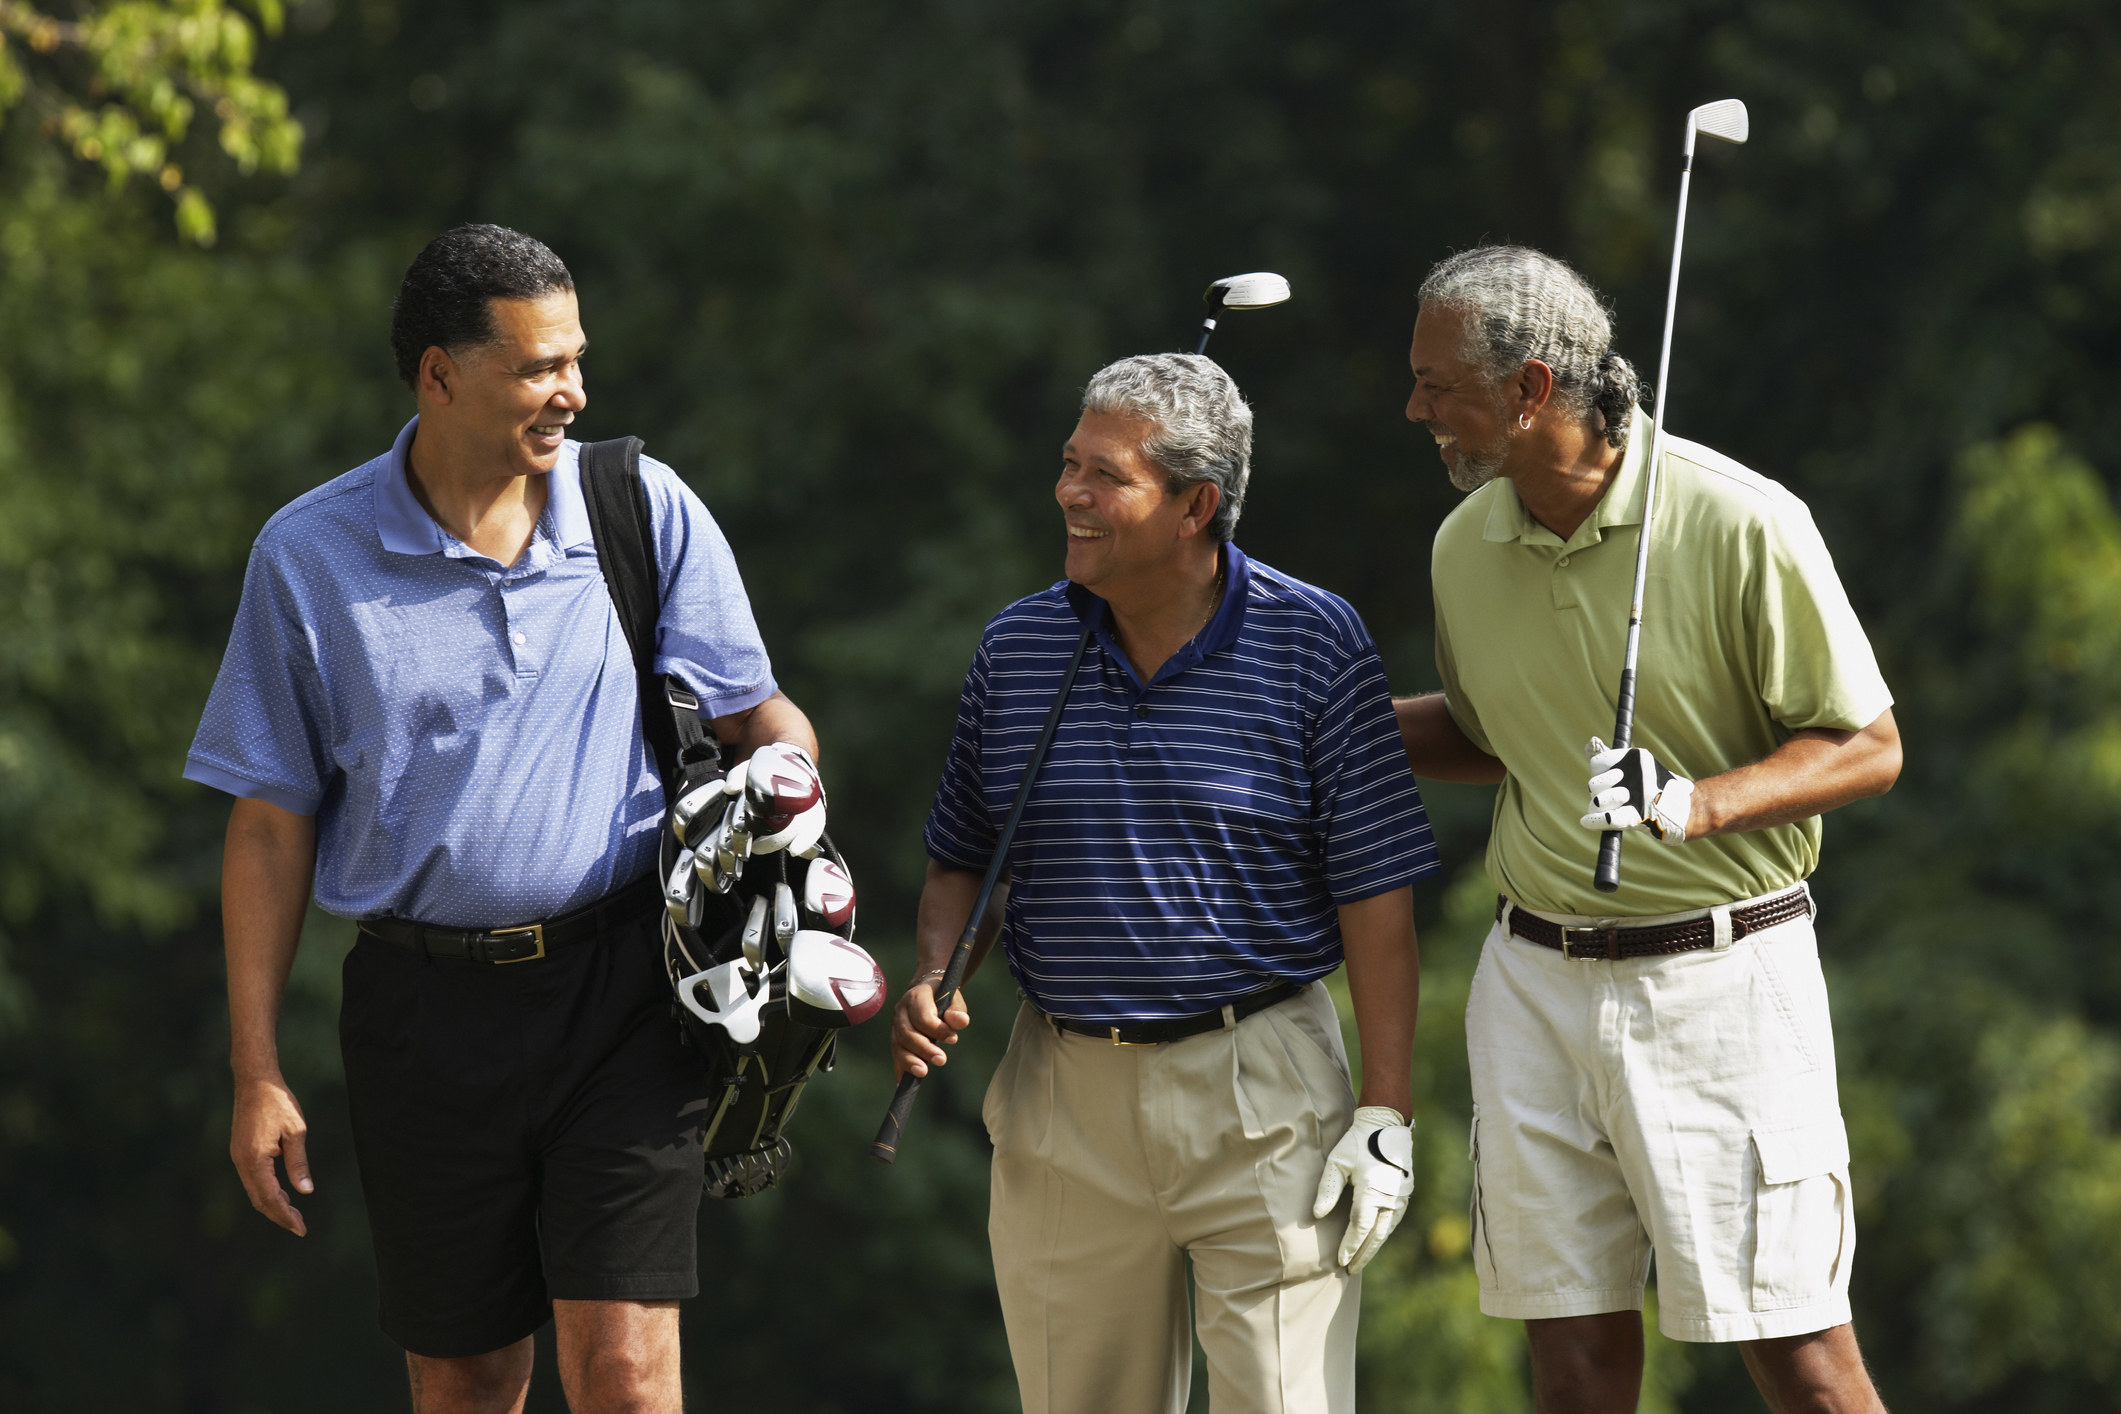 Men smiling and golfing